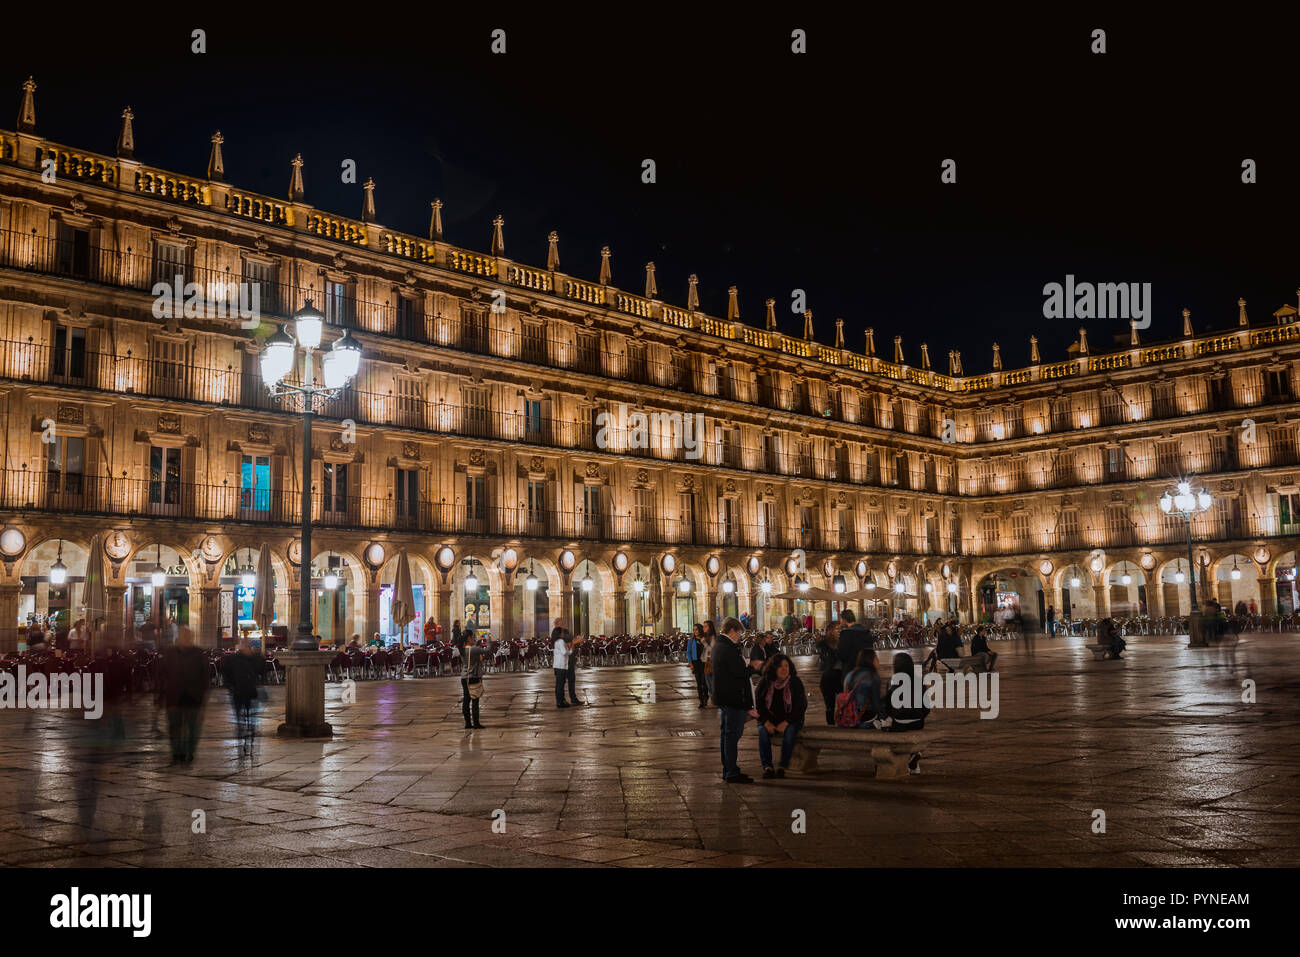 Blick auf die Plaza in der Nacht. Die Plaza Mayor, Hauptplatz, in Salamanca, Spanien, ist ein großer Platz im Zentrum von Salamanca, verwendet als öffentliche s Stockfoto